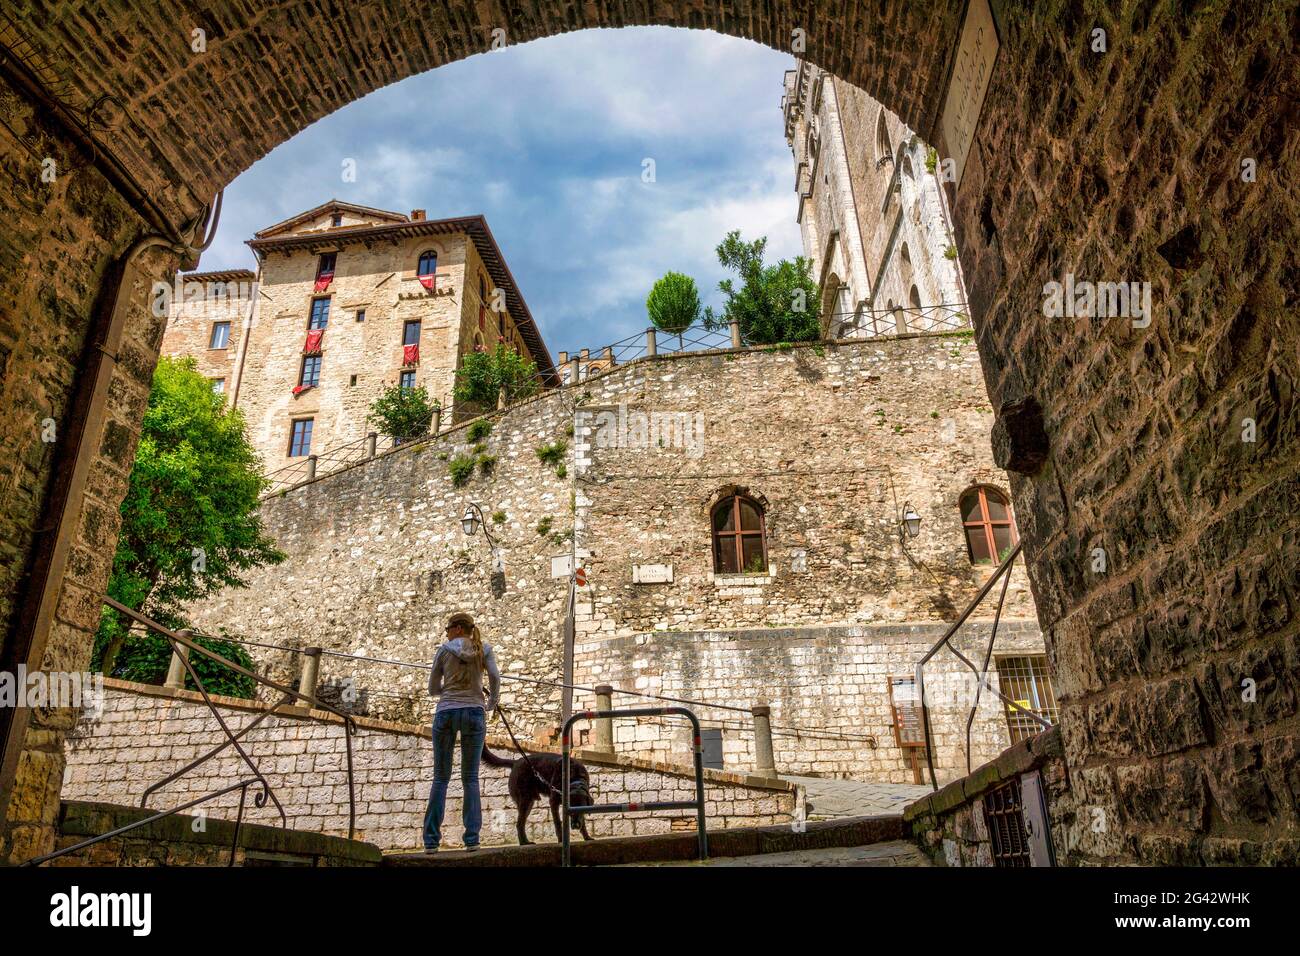 Entrée à la vieille ville de Gubbio, Gubbio, province de Pérouse, Ombrie, Italie, Europe Banque D'Images